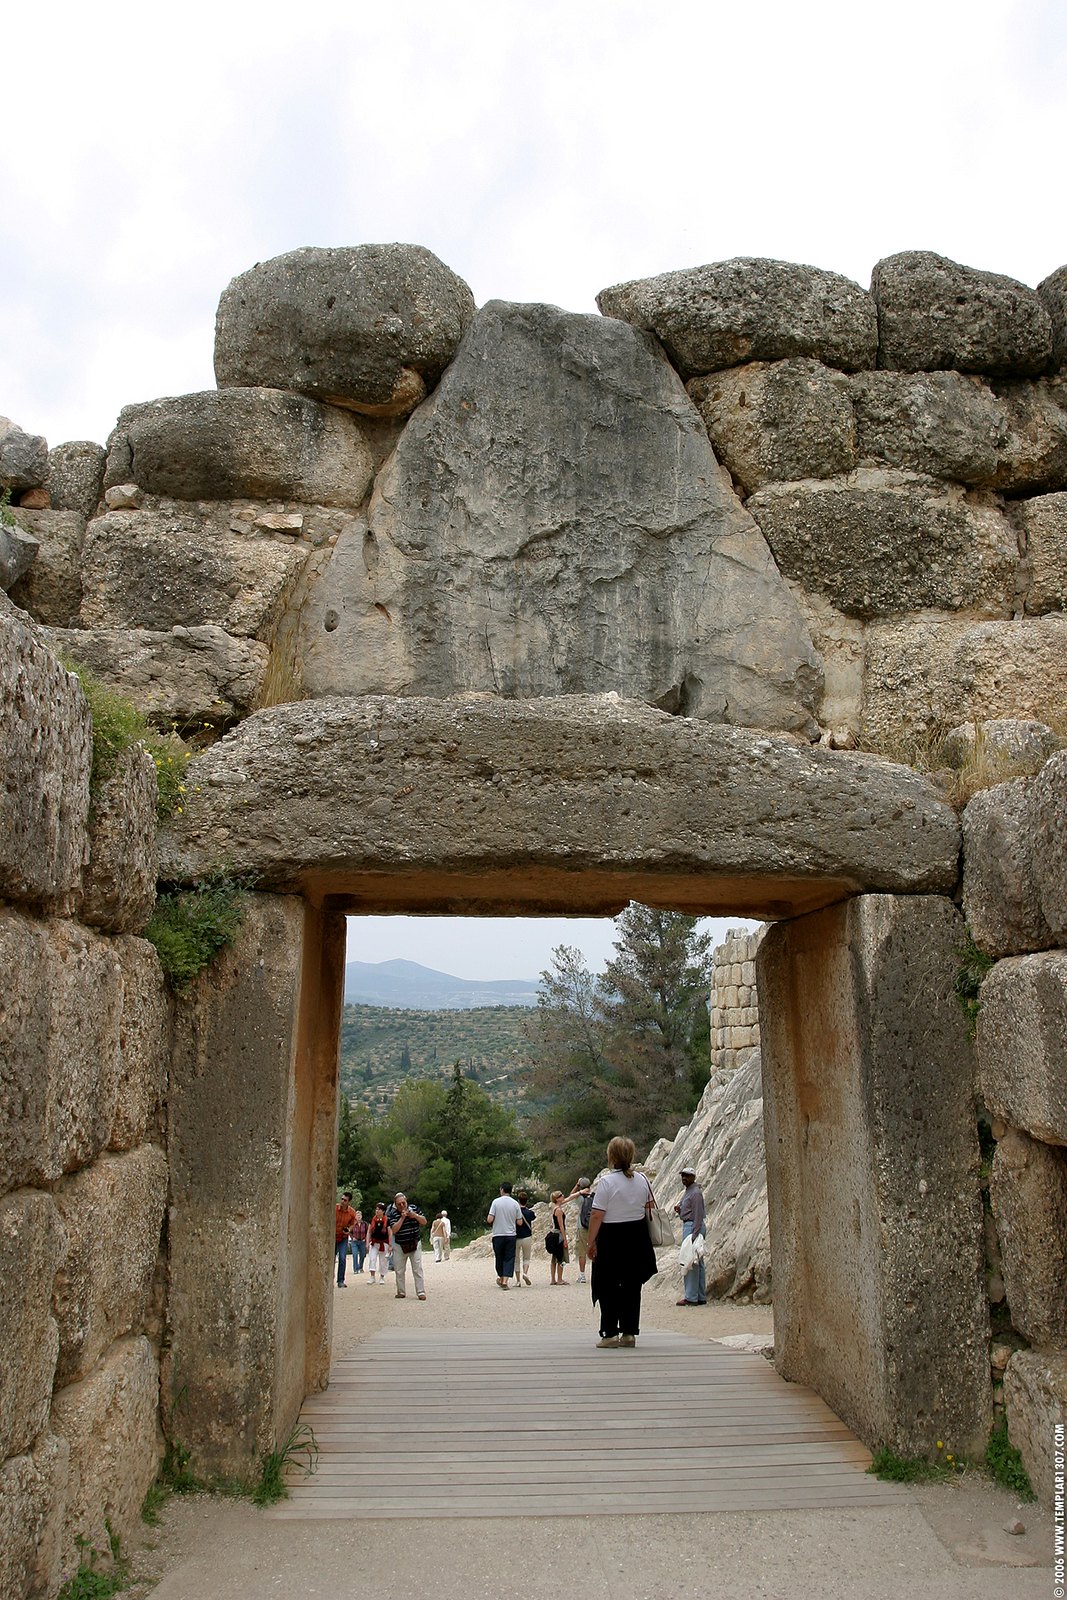 GR06 0172 Mycenae